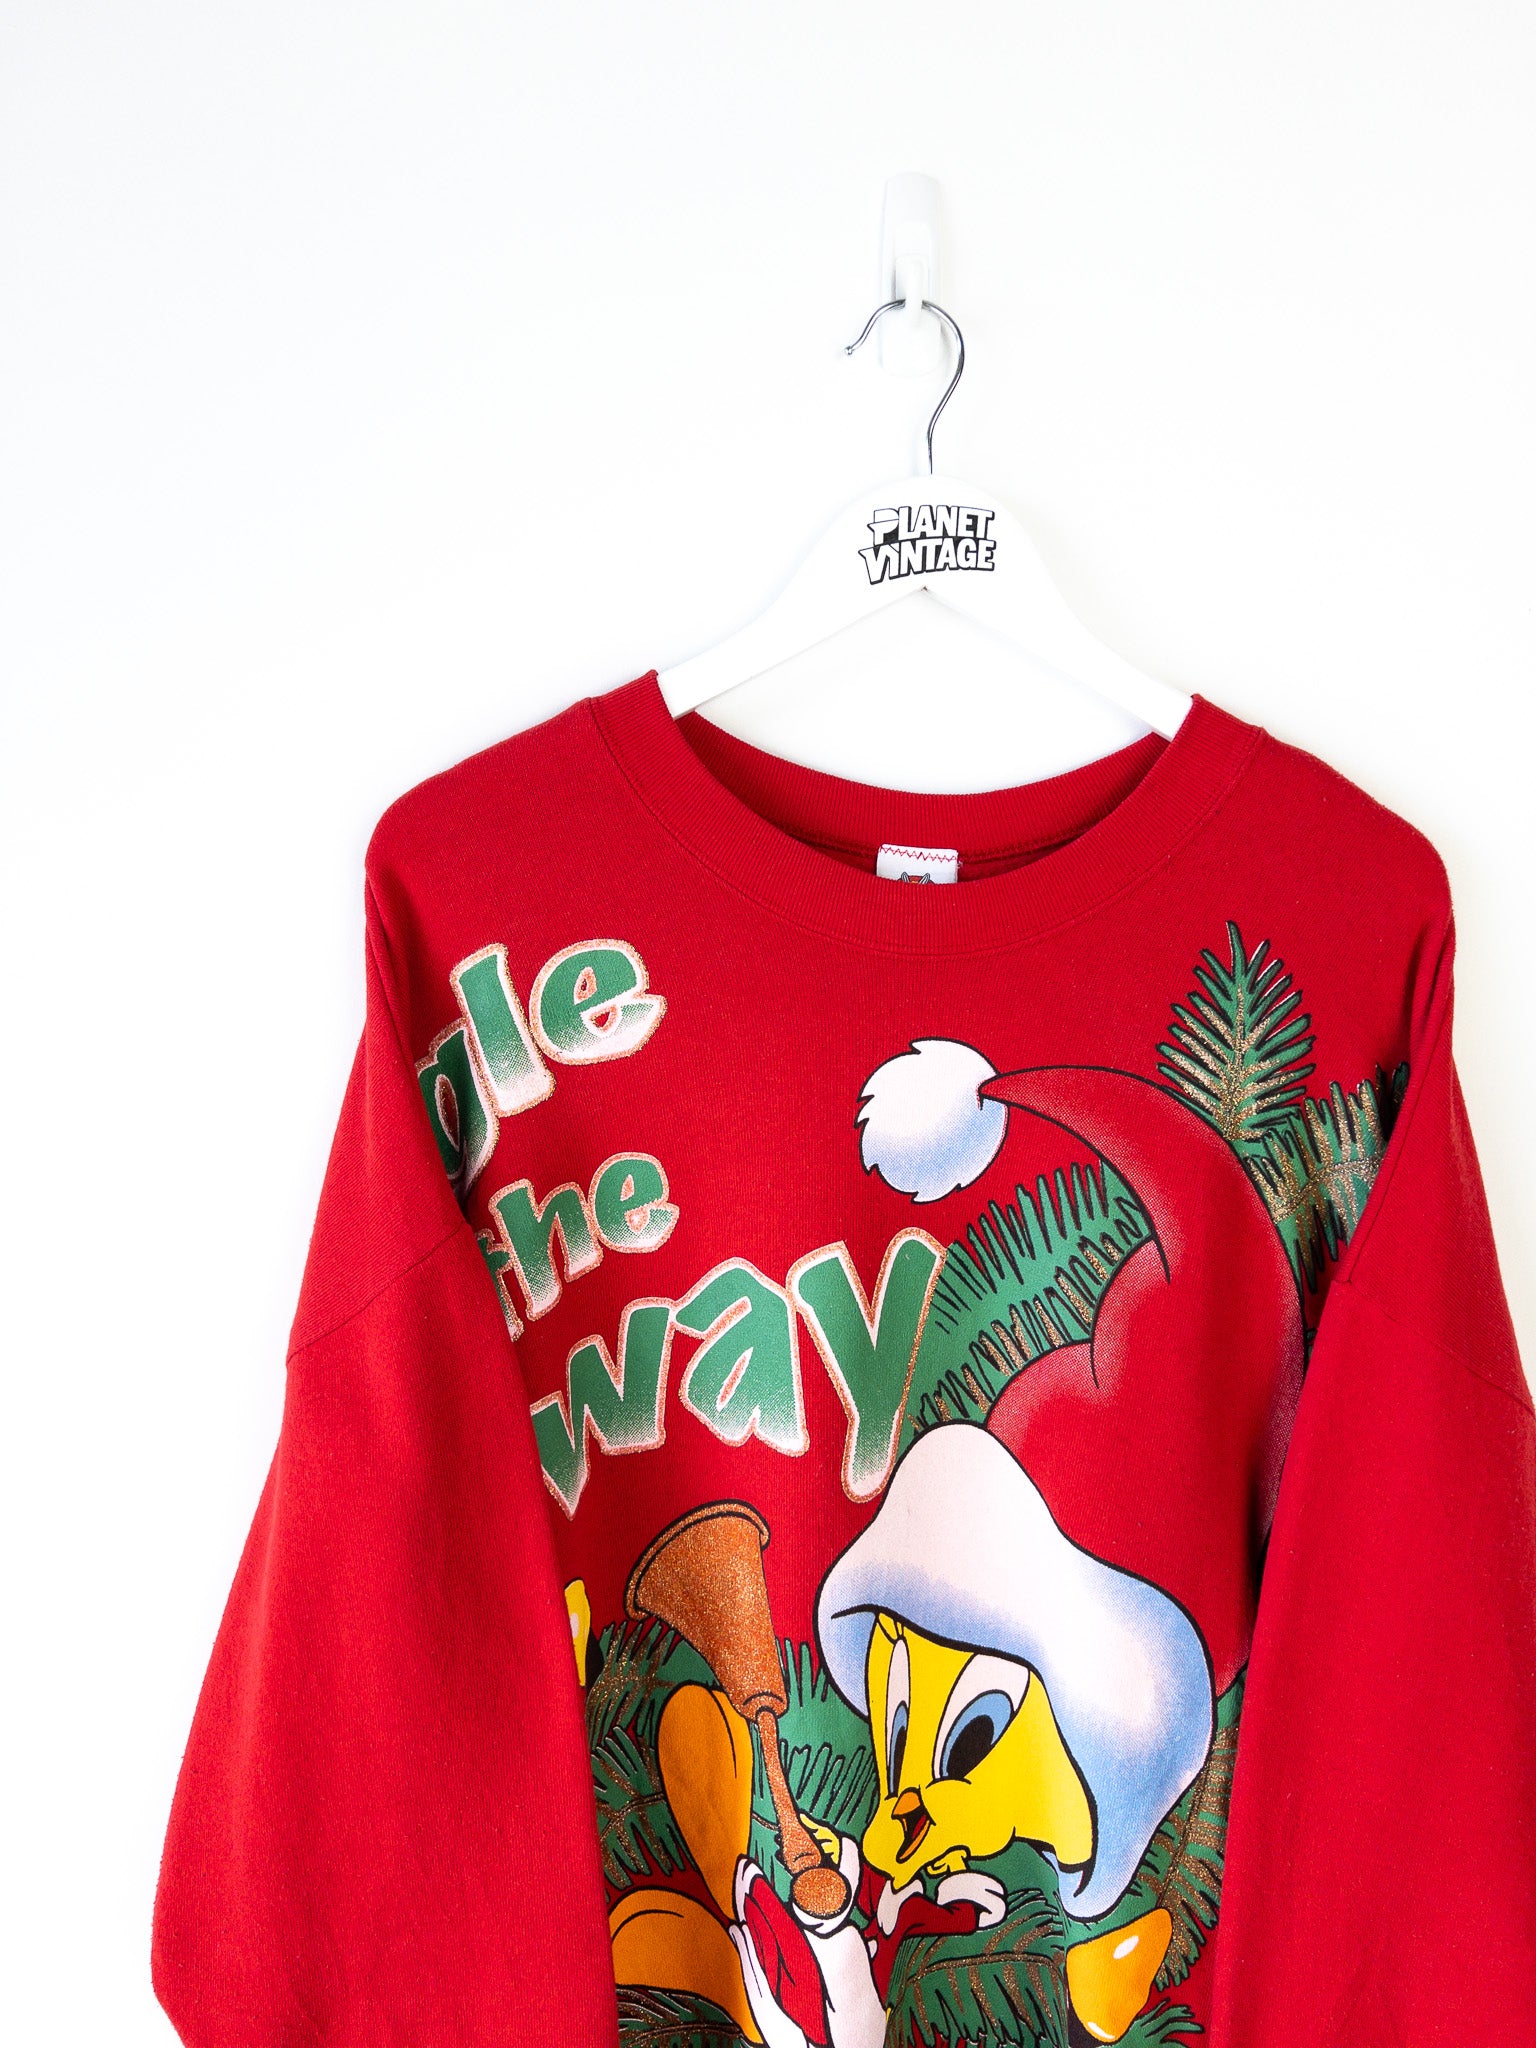 Vintage Tweety Jingle all the Way 1997 Sweatshirt (XL)